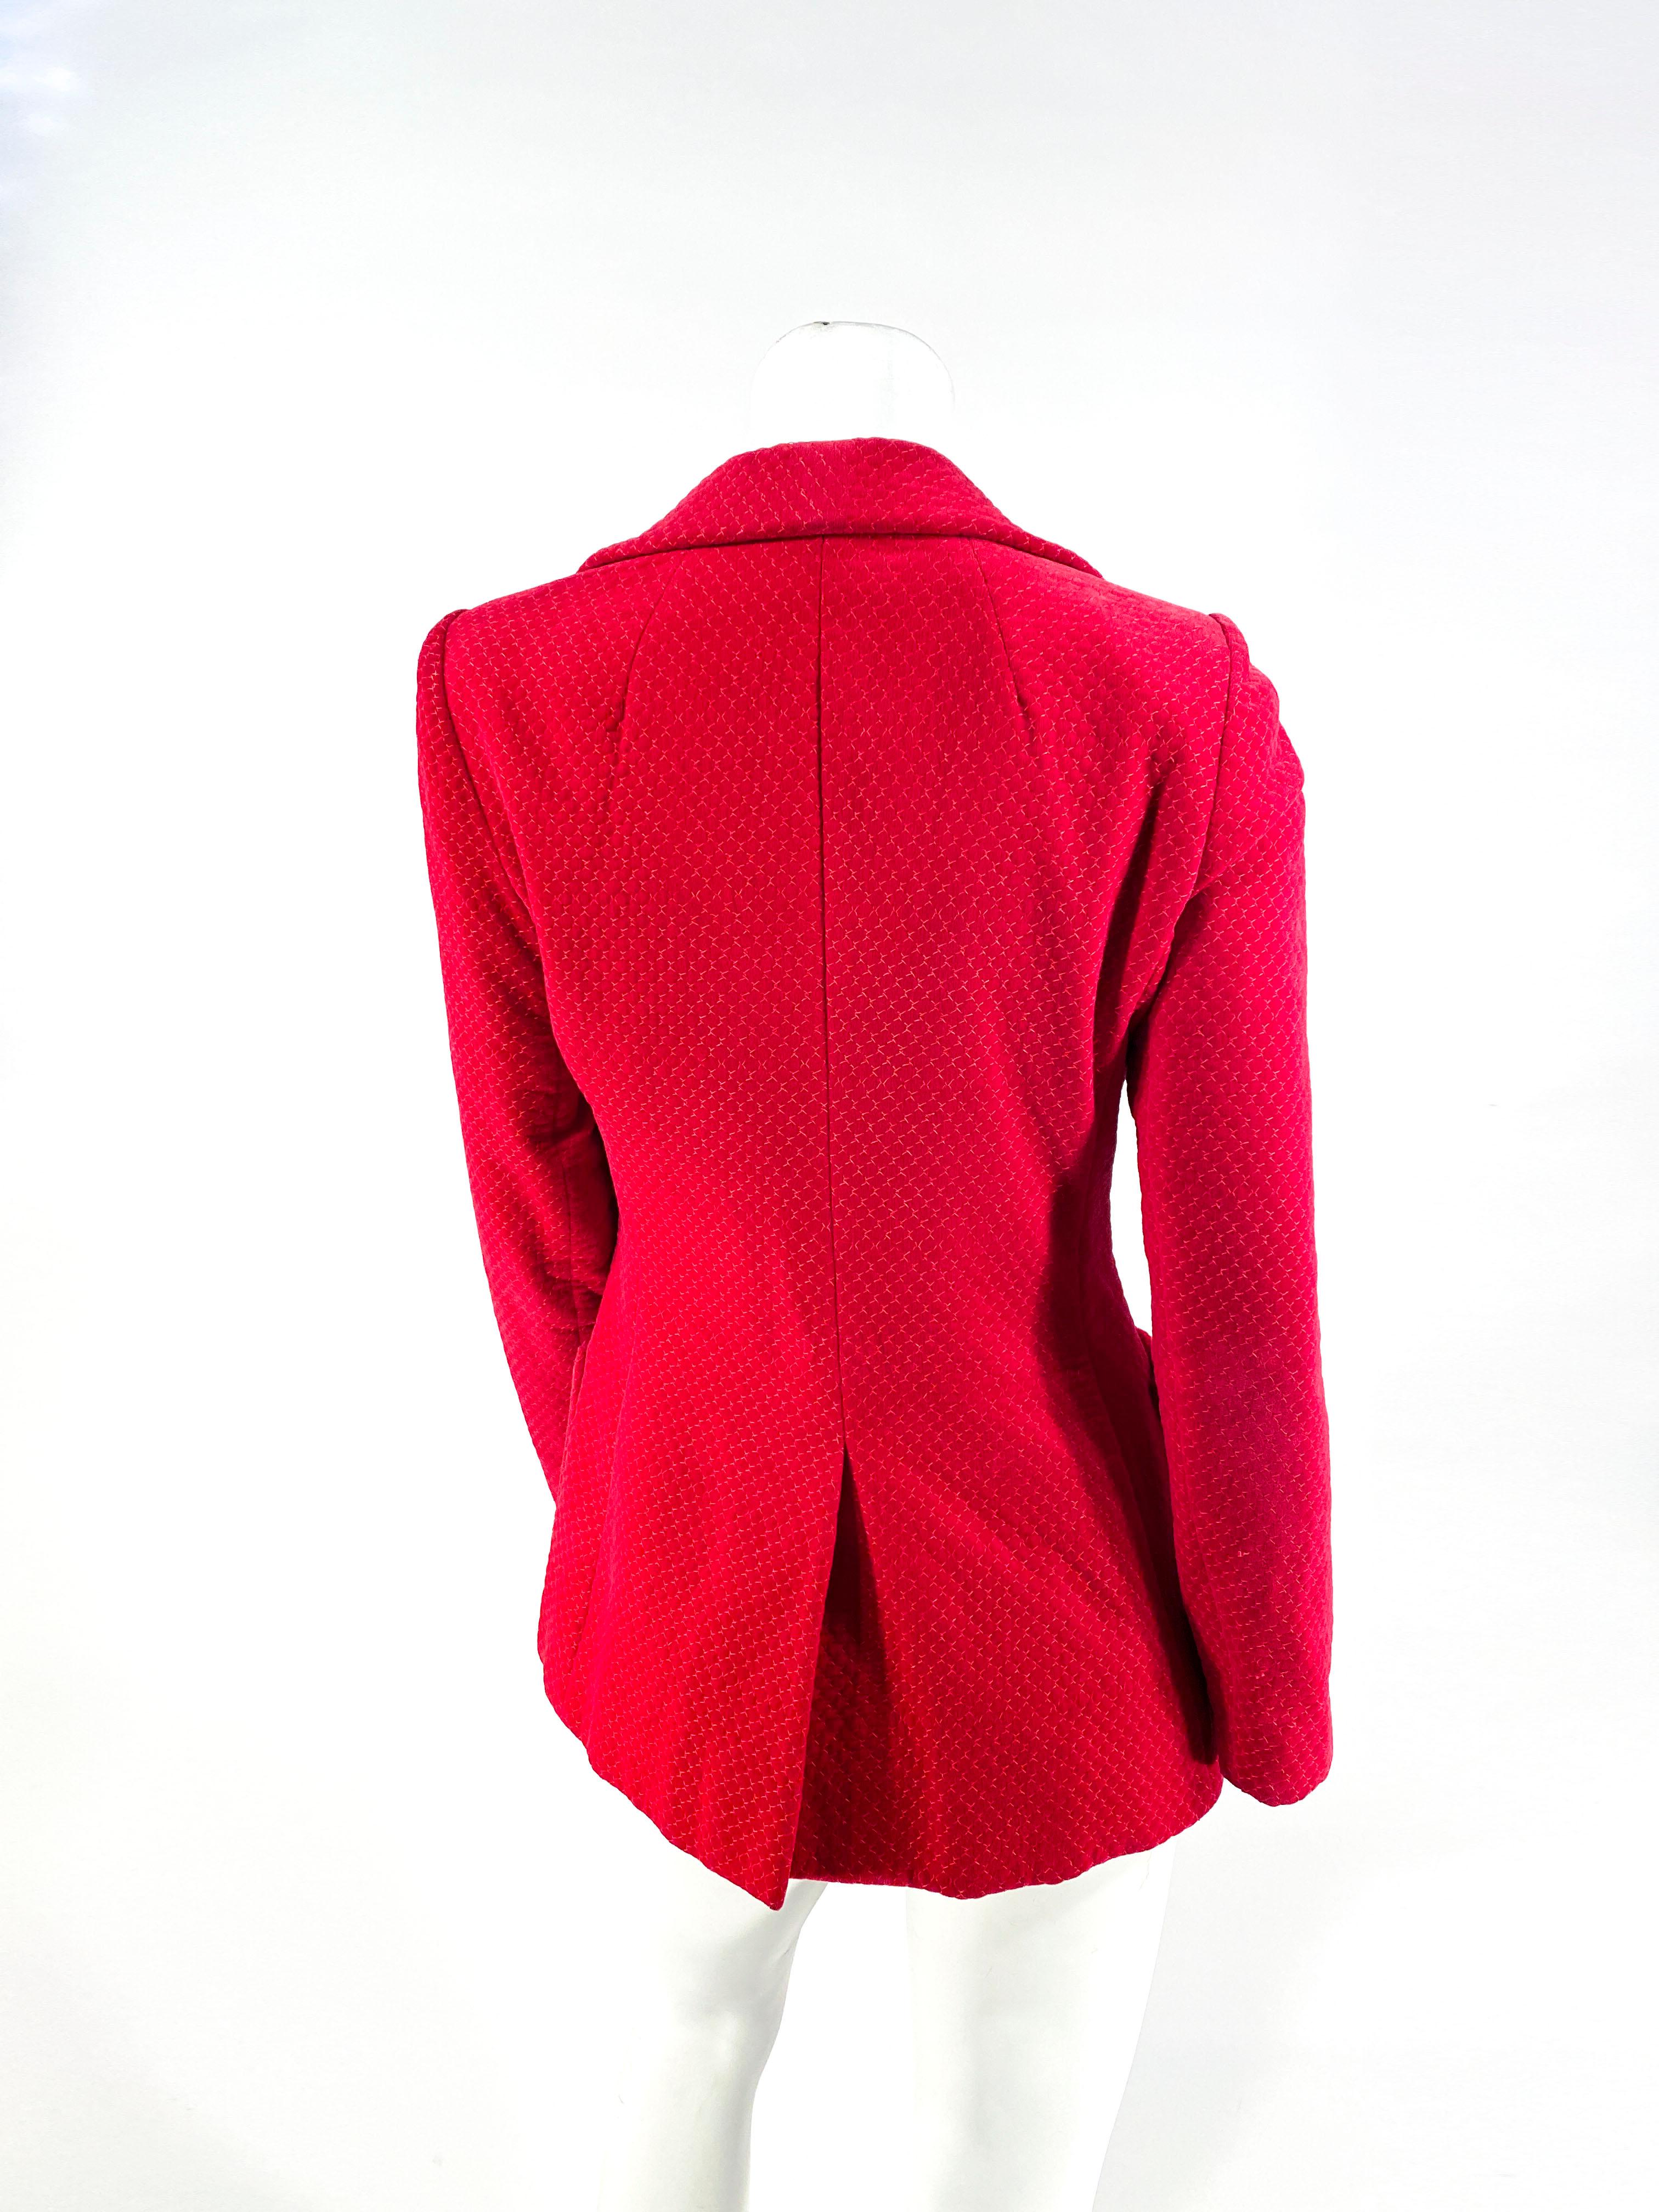 Women's 1970s Cranberry Red Patterned Velvet Blazer